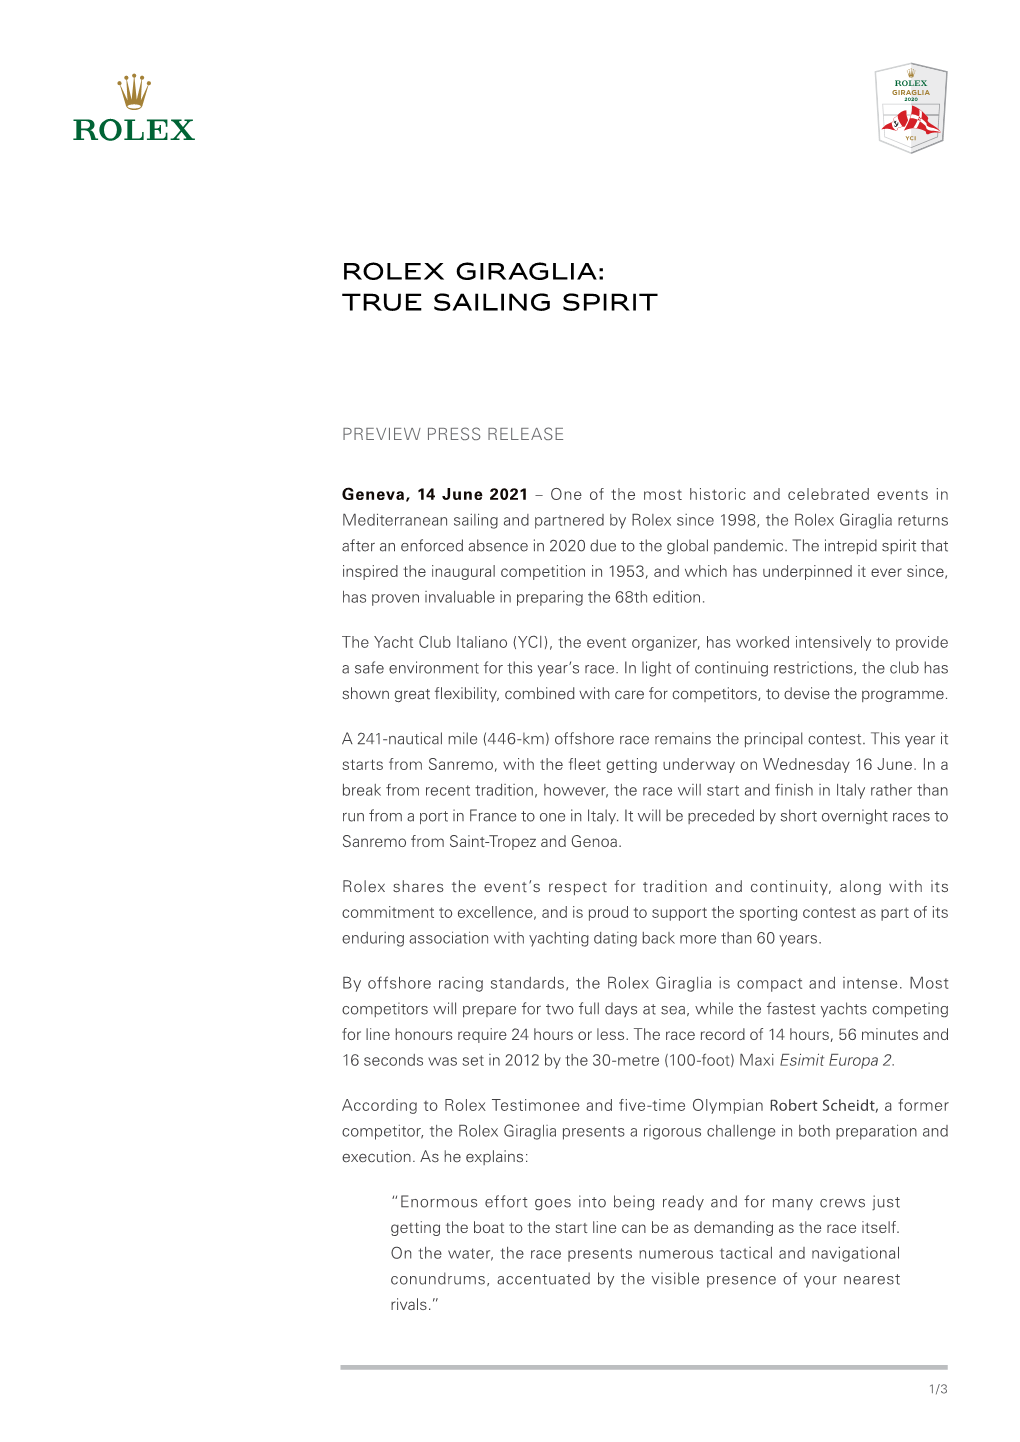 Rolex Giraglia: True Sailing Spirit